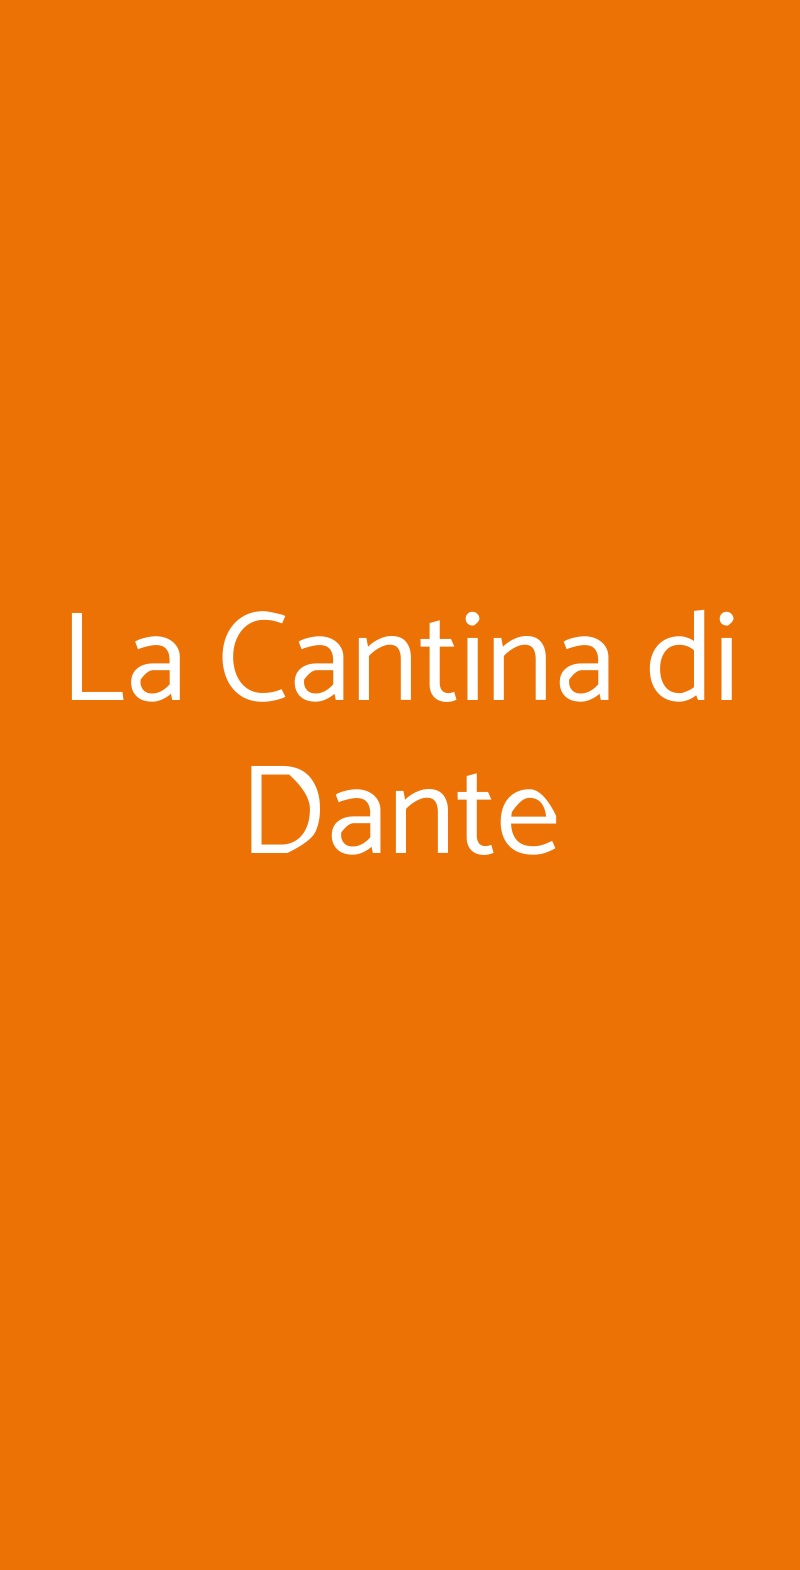 La Cantina di Dante Roma menù 1 pagina